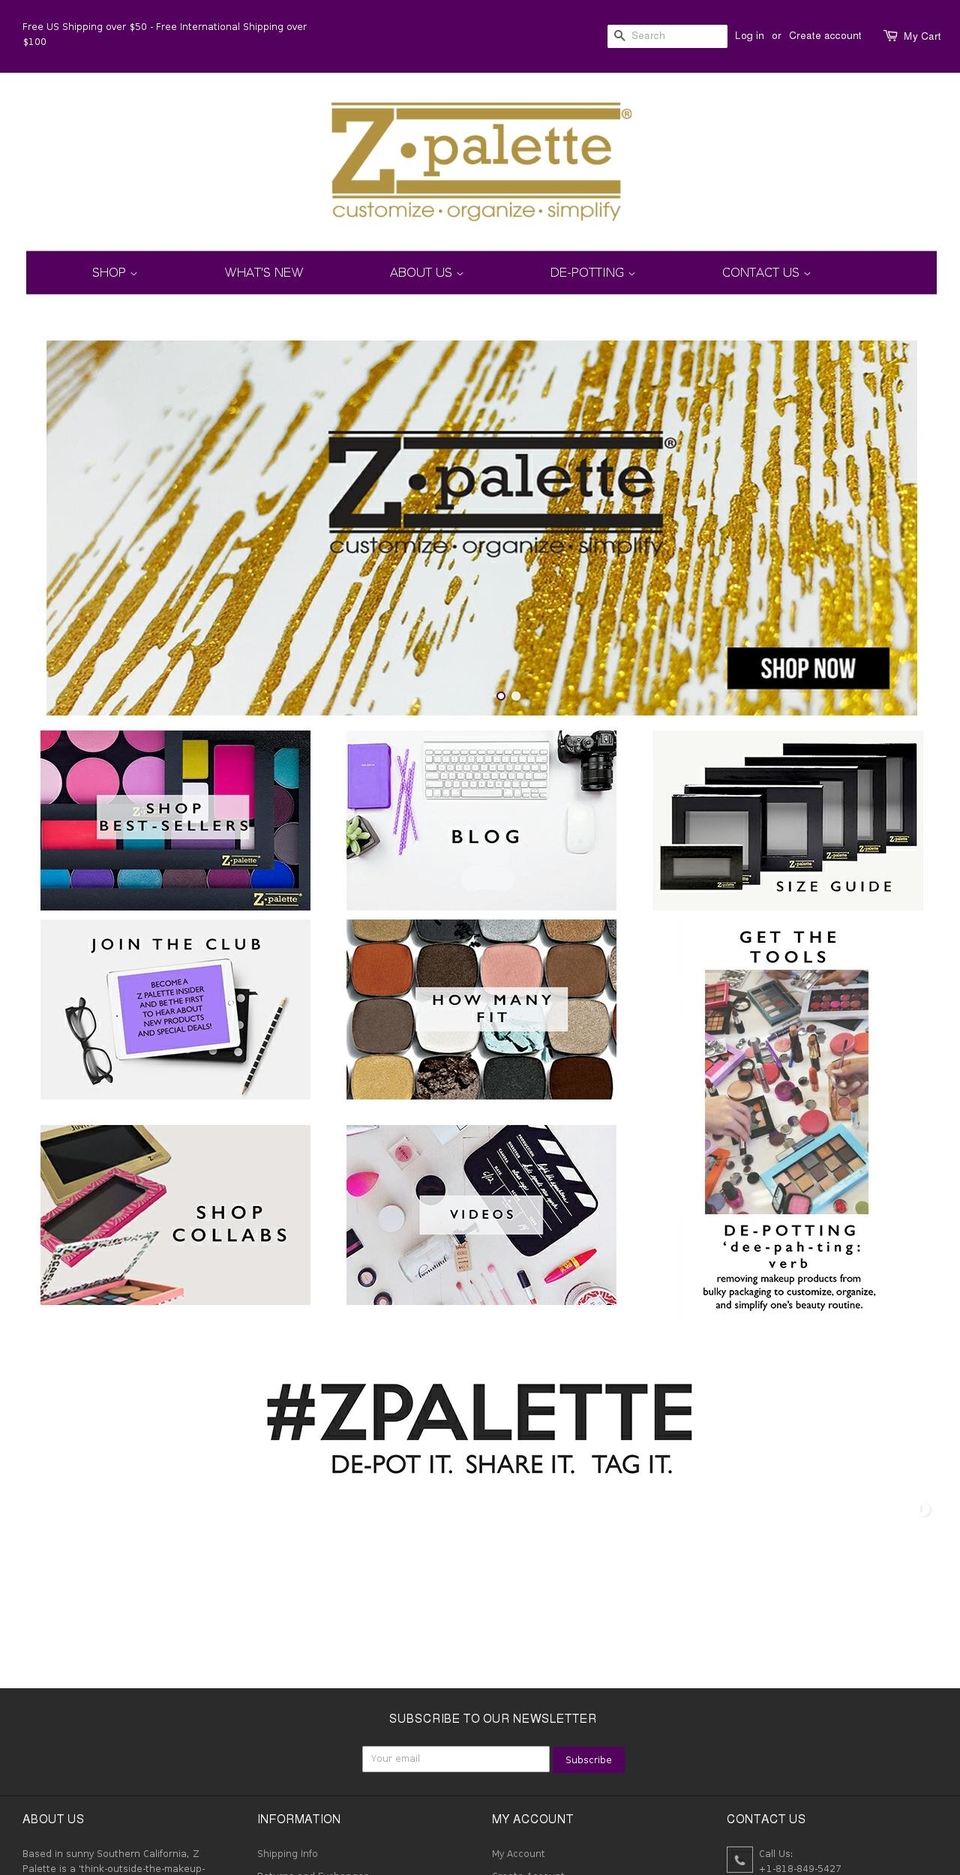 ZPalette Apolo fix Shopify theme site example zpalette.com